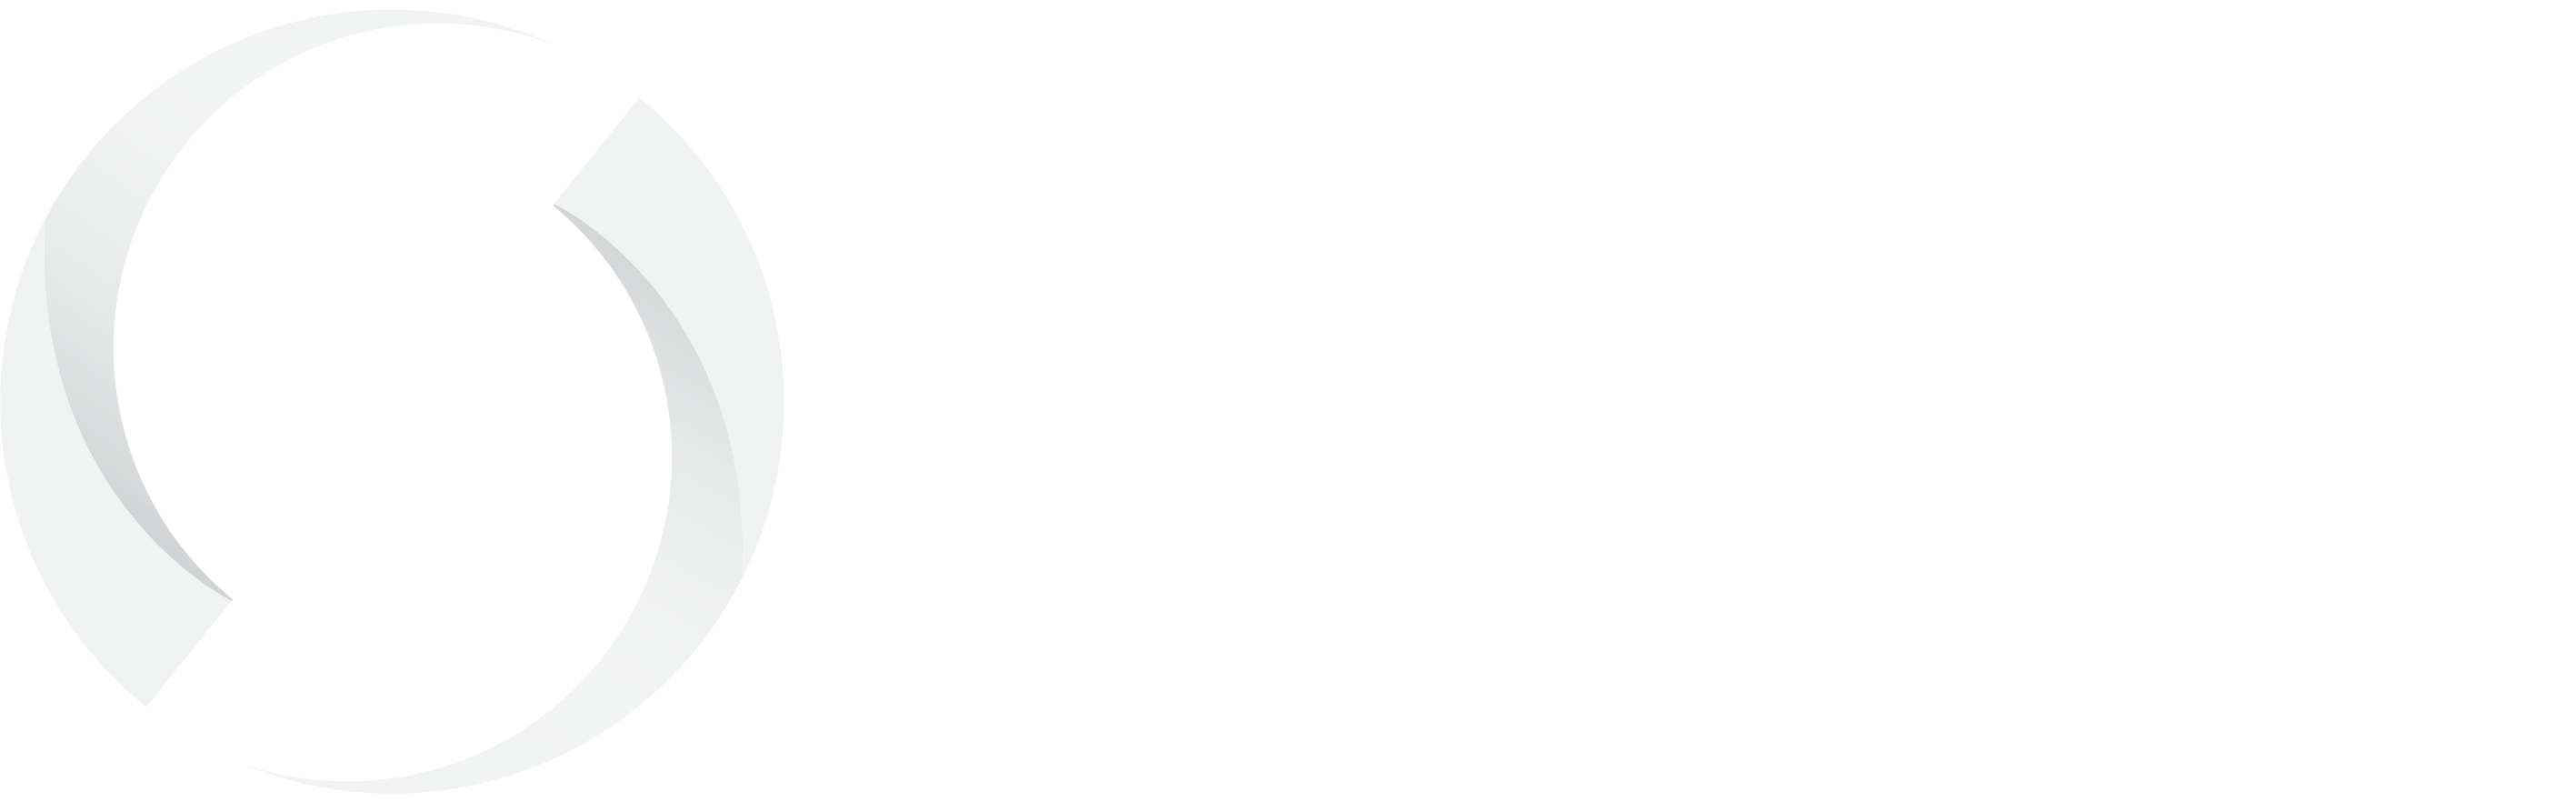 Swish Logo - Swish - Betala Enklare